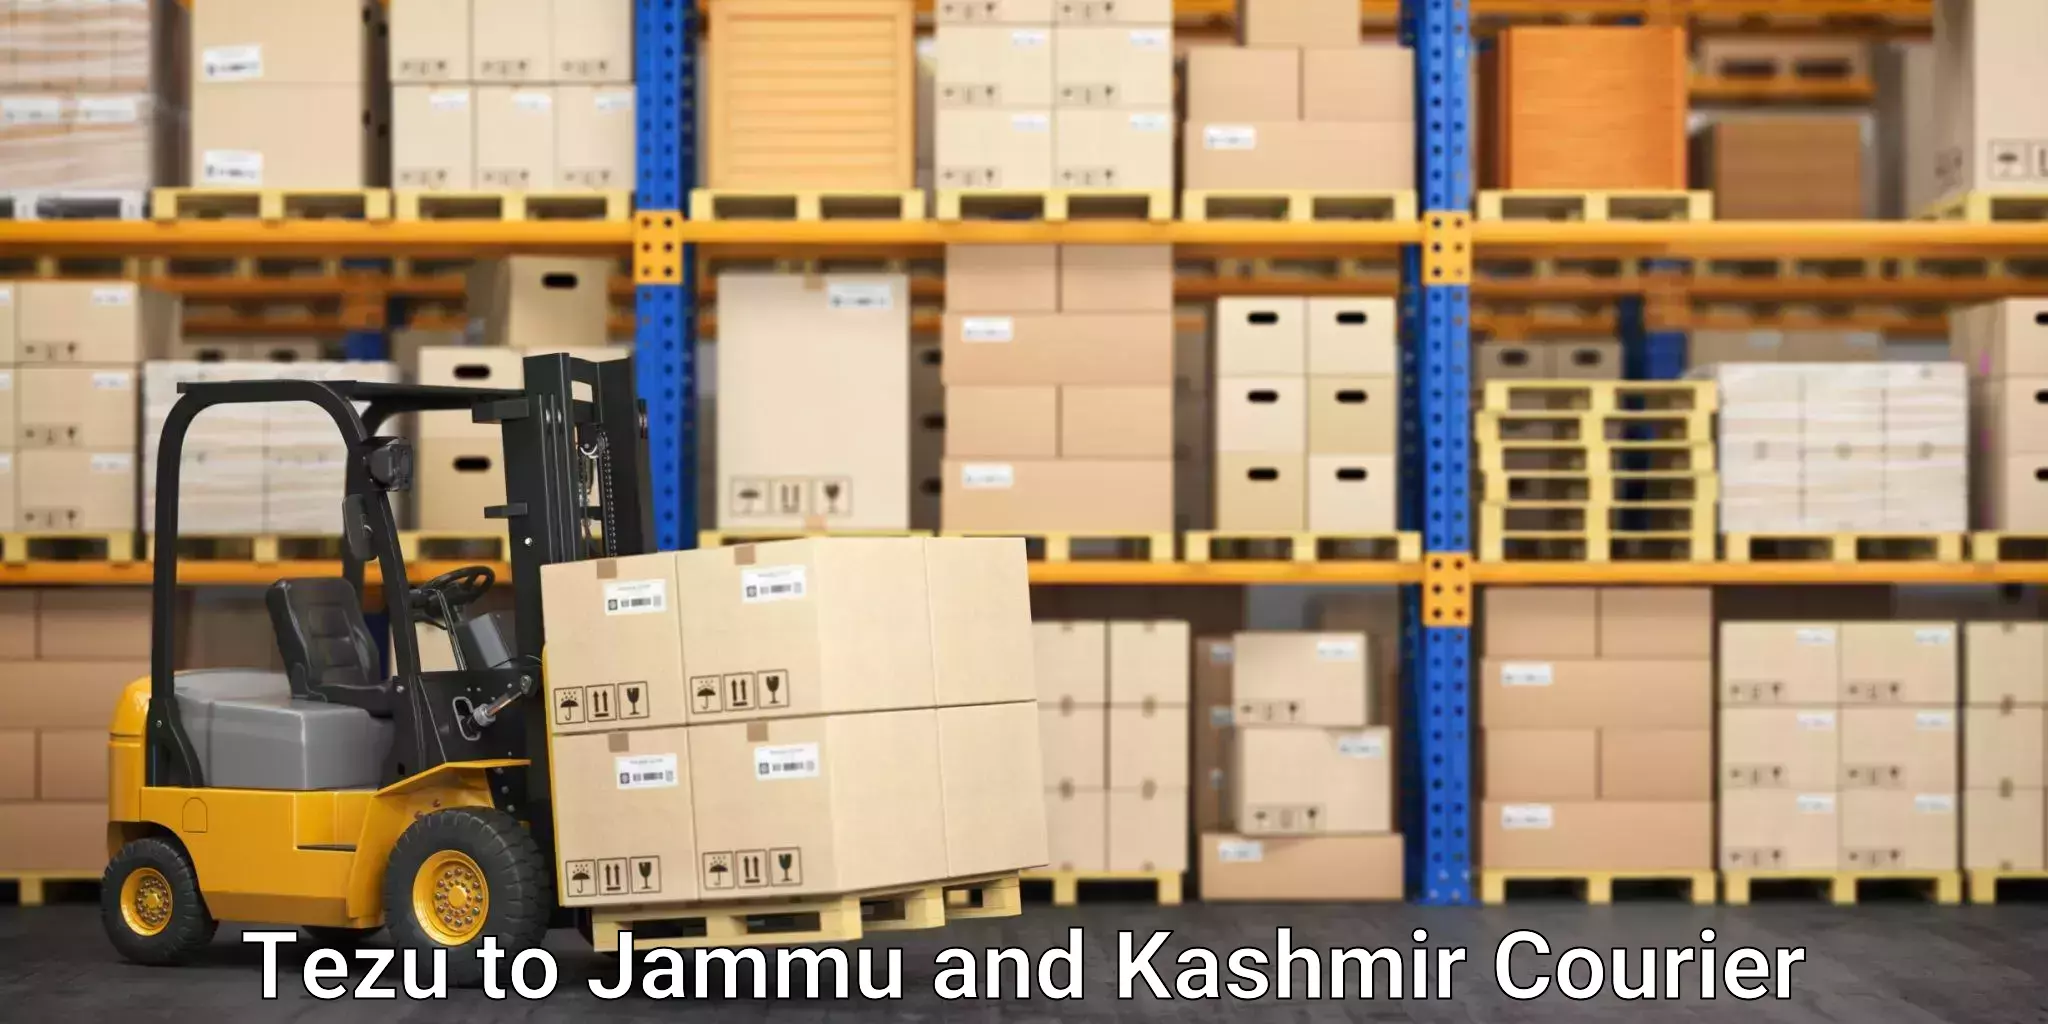 Express logistics service Tezu to Jammu and Kashmir